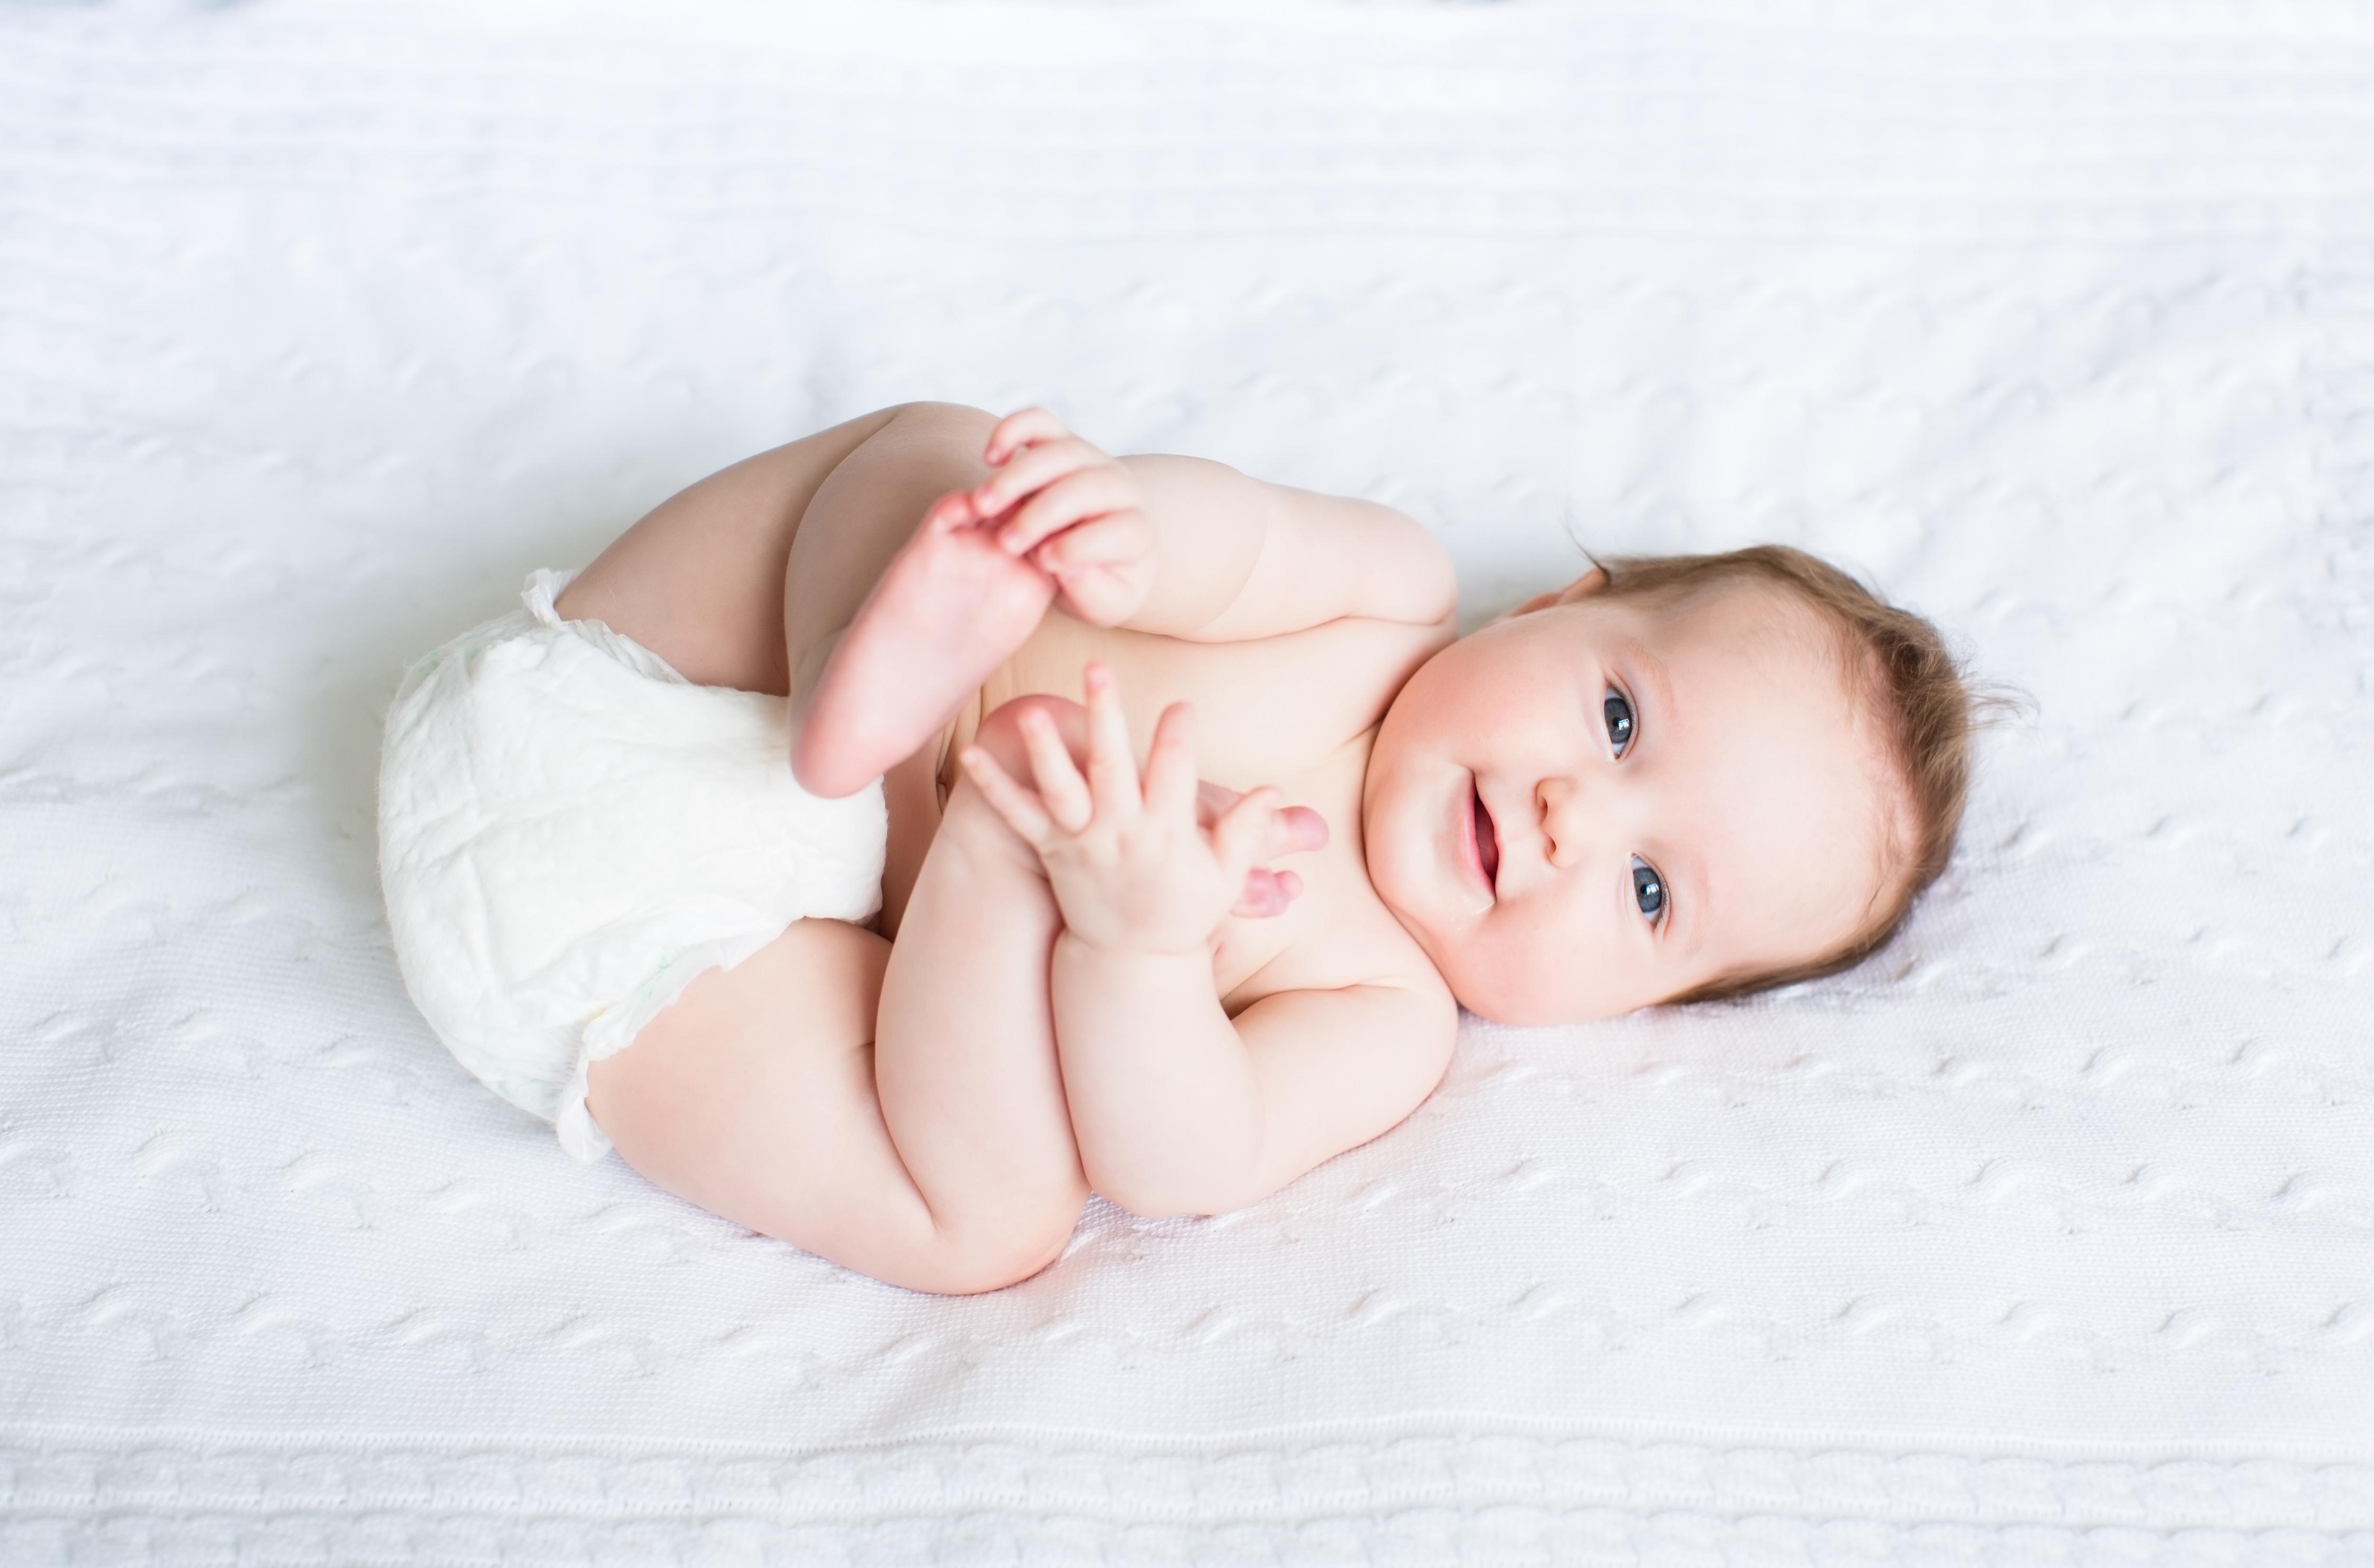 Tips Memilih dan Mengetahui Harga Popok Bayi